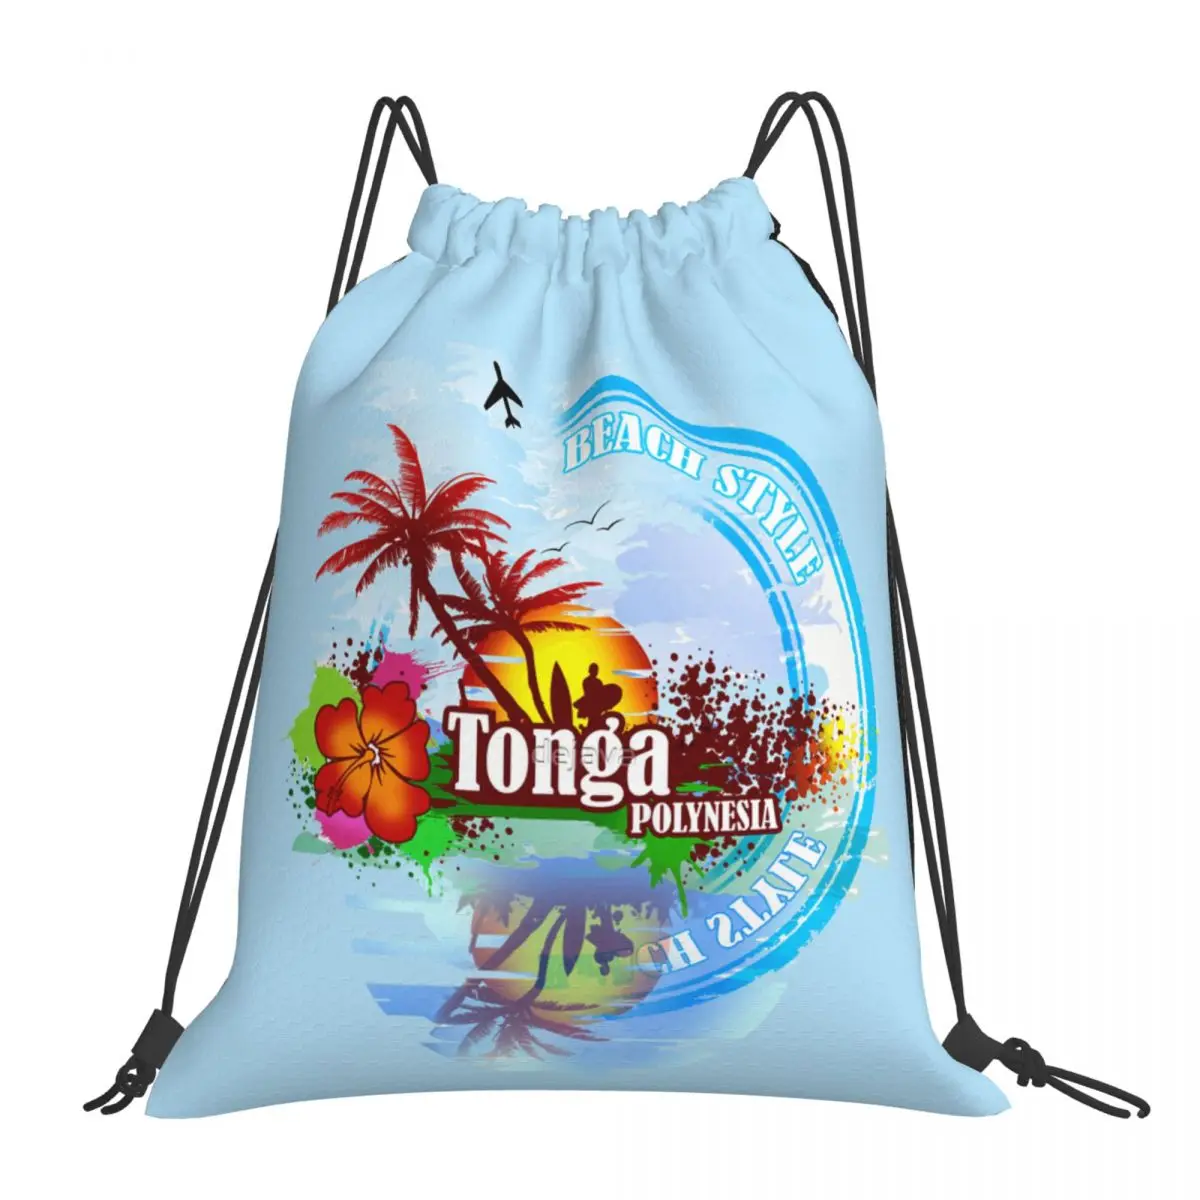 

Сумки на шнурке, сумка для спортзала, Tonga Volcano, Полинезия, крутой Графический Рюкзак, ажурное одеяло, забавная Новинка